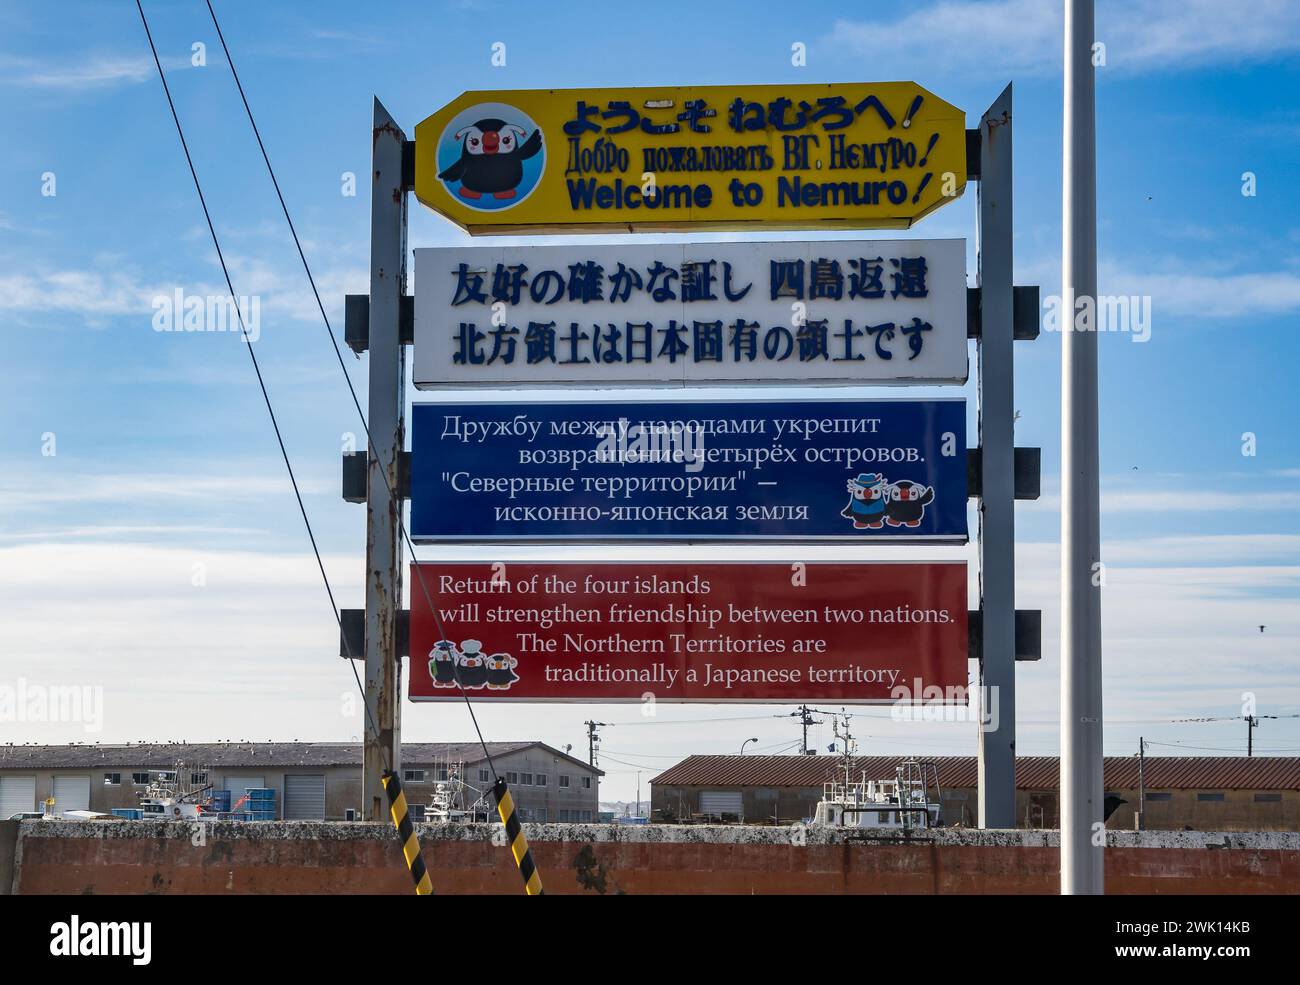 Melden Sie sich in japanischer, russischer und englischer Sprache an und fordern Sie die Rückgabe der vier Inseln der nördlichen Territorien an. Nemuro, Hokkaido, Japan. Stockfoto